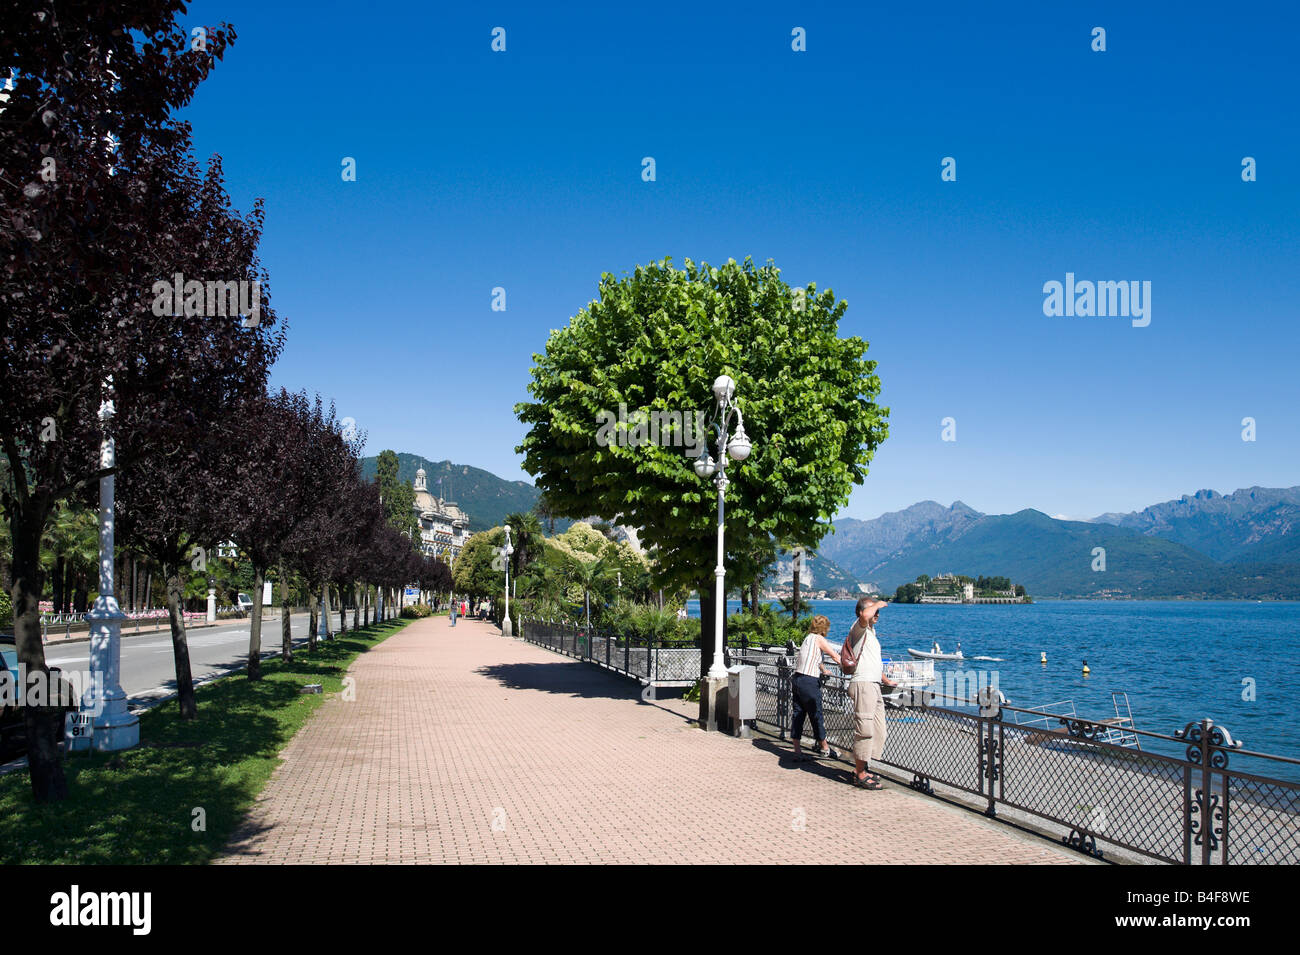 Stresa, parata di stelle sul Lago Maggiore per la sfilata di Louis Vuitton  sull'Isola Bella - La Stampa